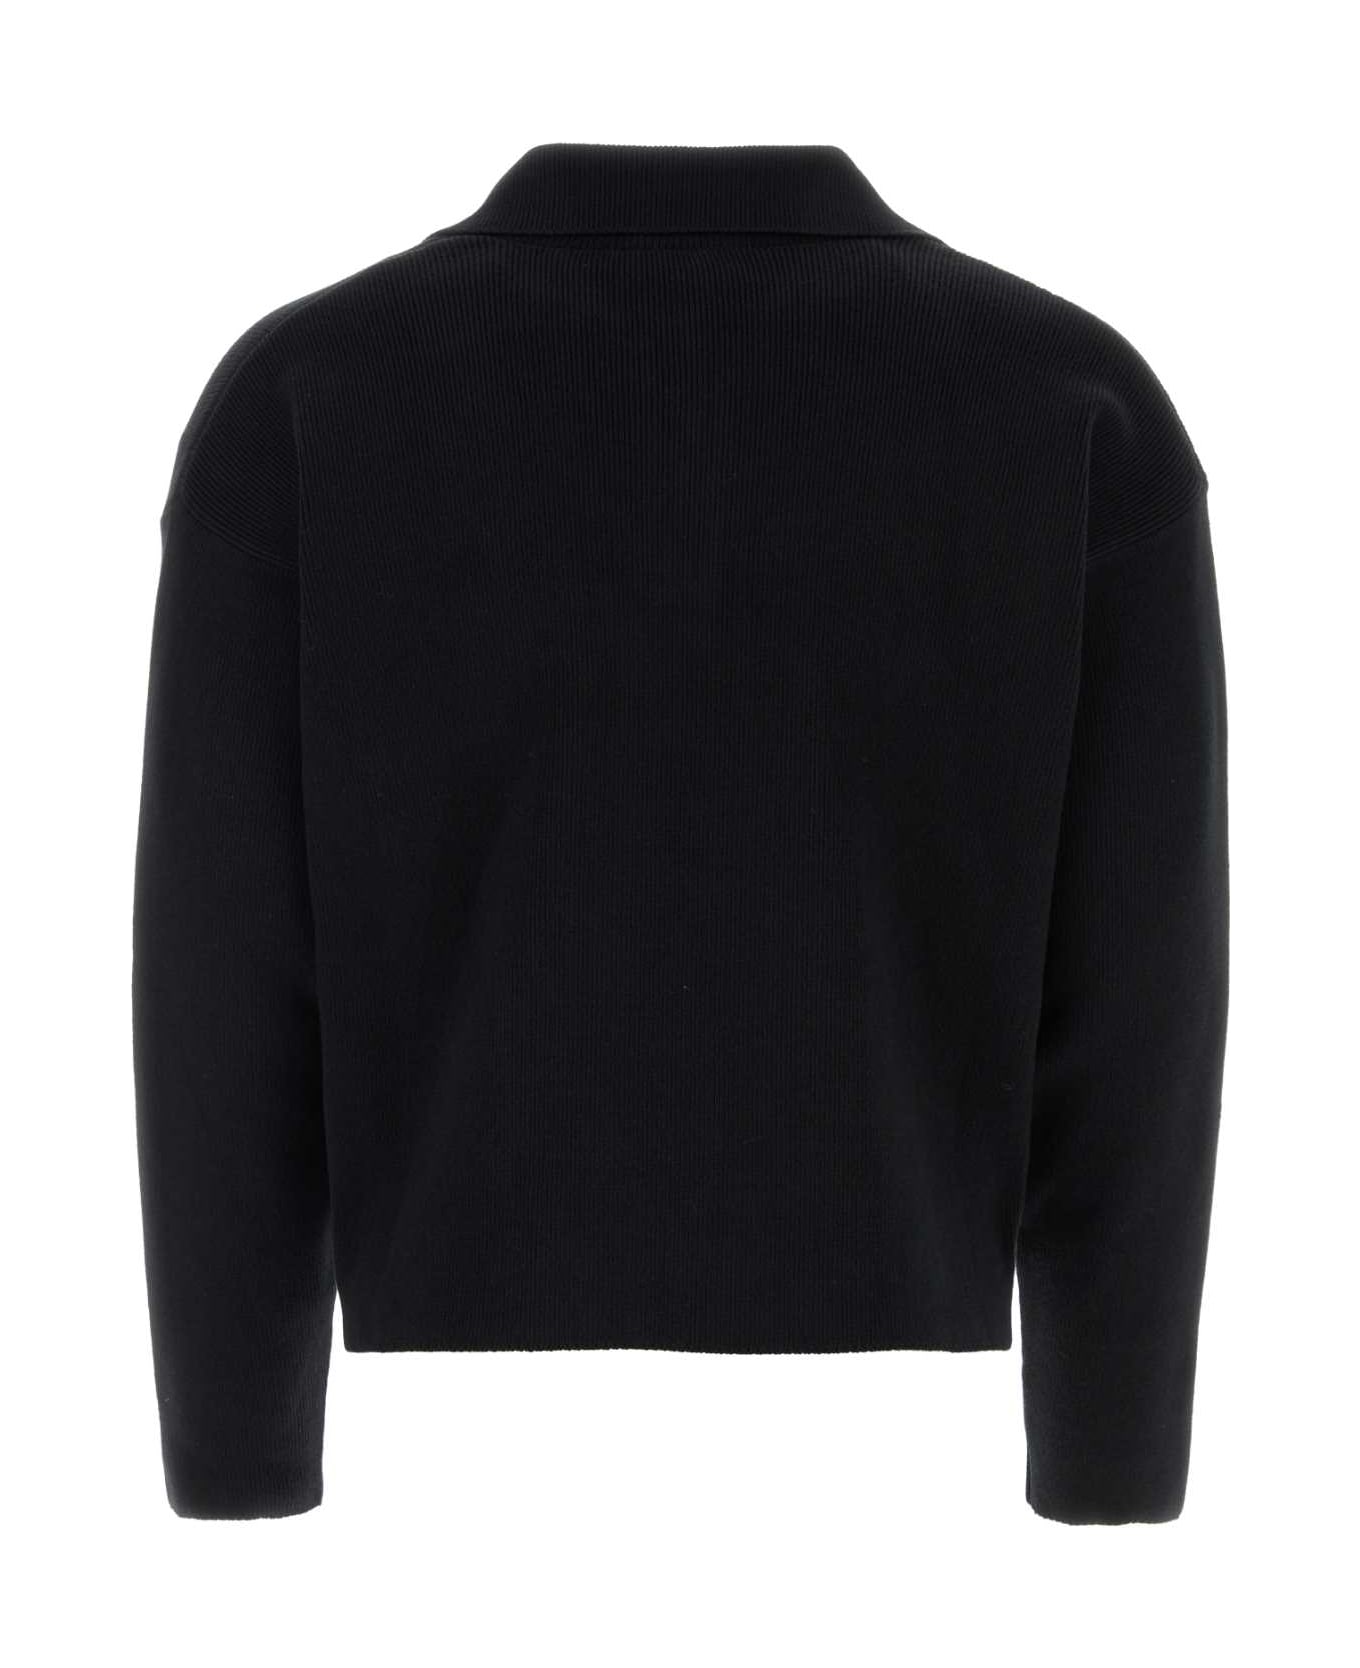 Ami Alexandre Mattiussi Black Stretch Wool Blend Sweater - BLACK name:472